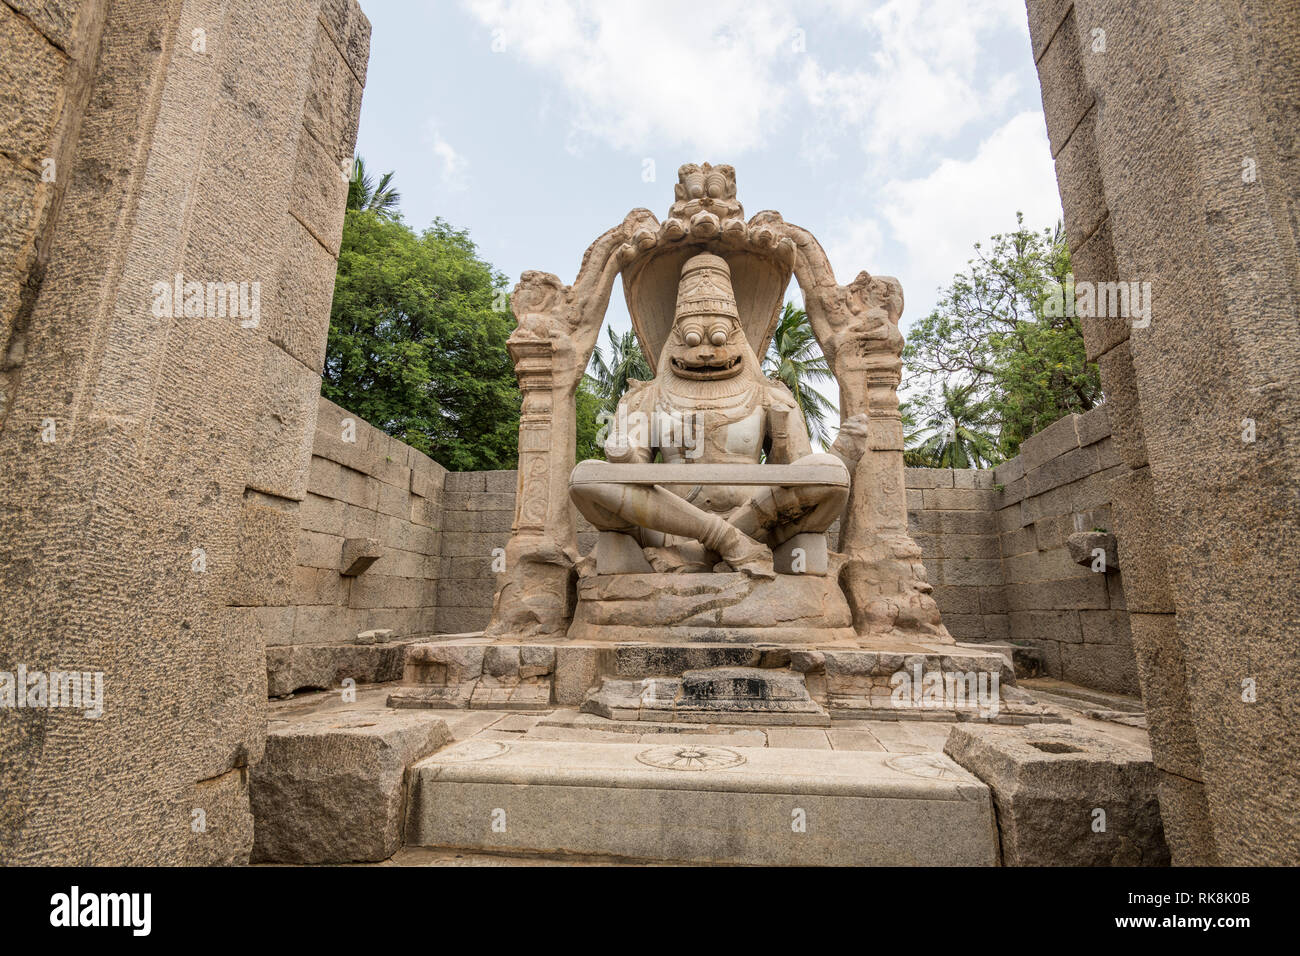 Le Lakshmi Narasimha Hampi temple est dédié au dieu Vishnu. Il y avait une statue de la déesse Lakshmi assis sur les genoux de Vishnu qui a été détruit. Banque D'Images